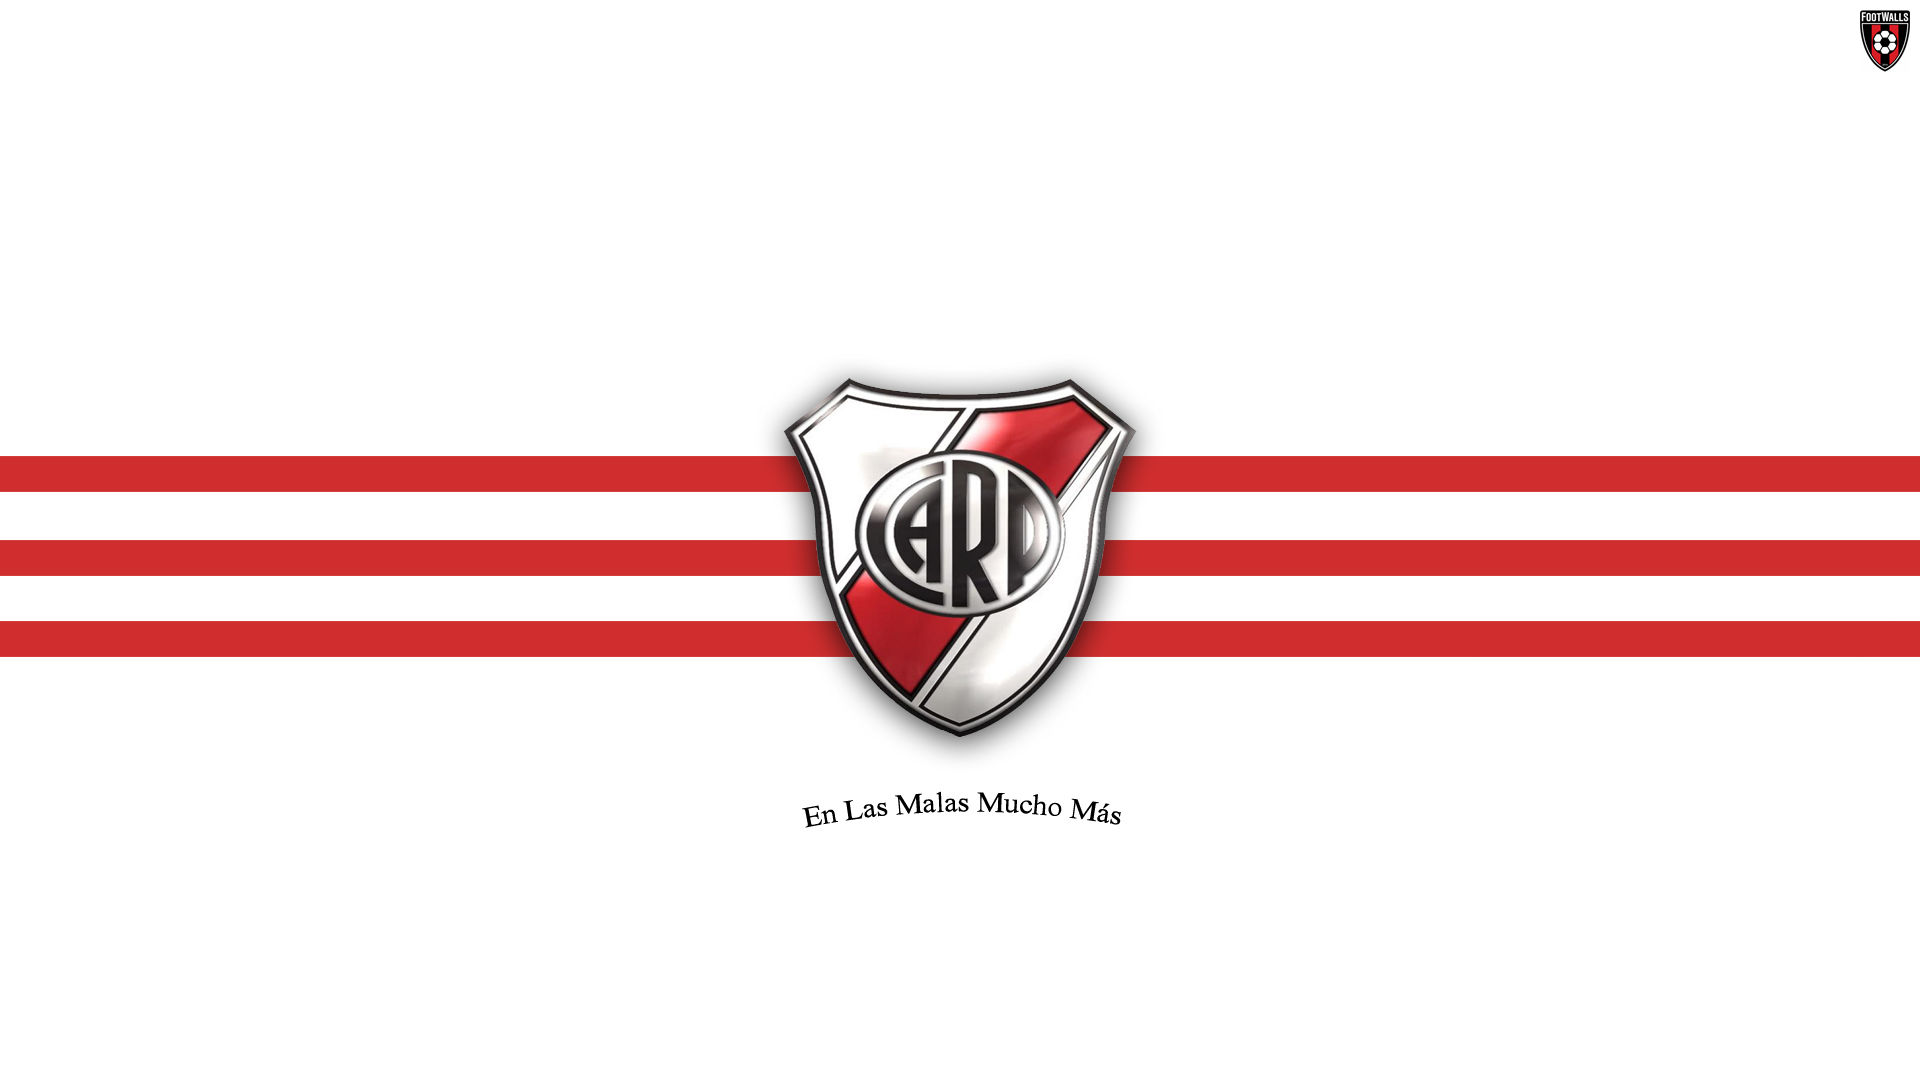 River Plate Wallpaper - River Plate Escudo - 1920x1080 Wallpaper 